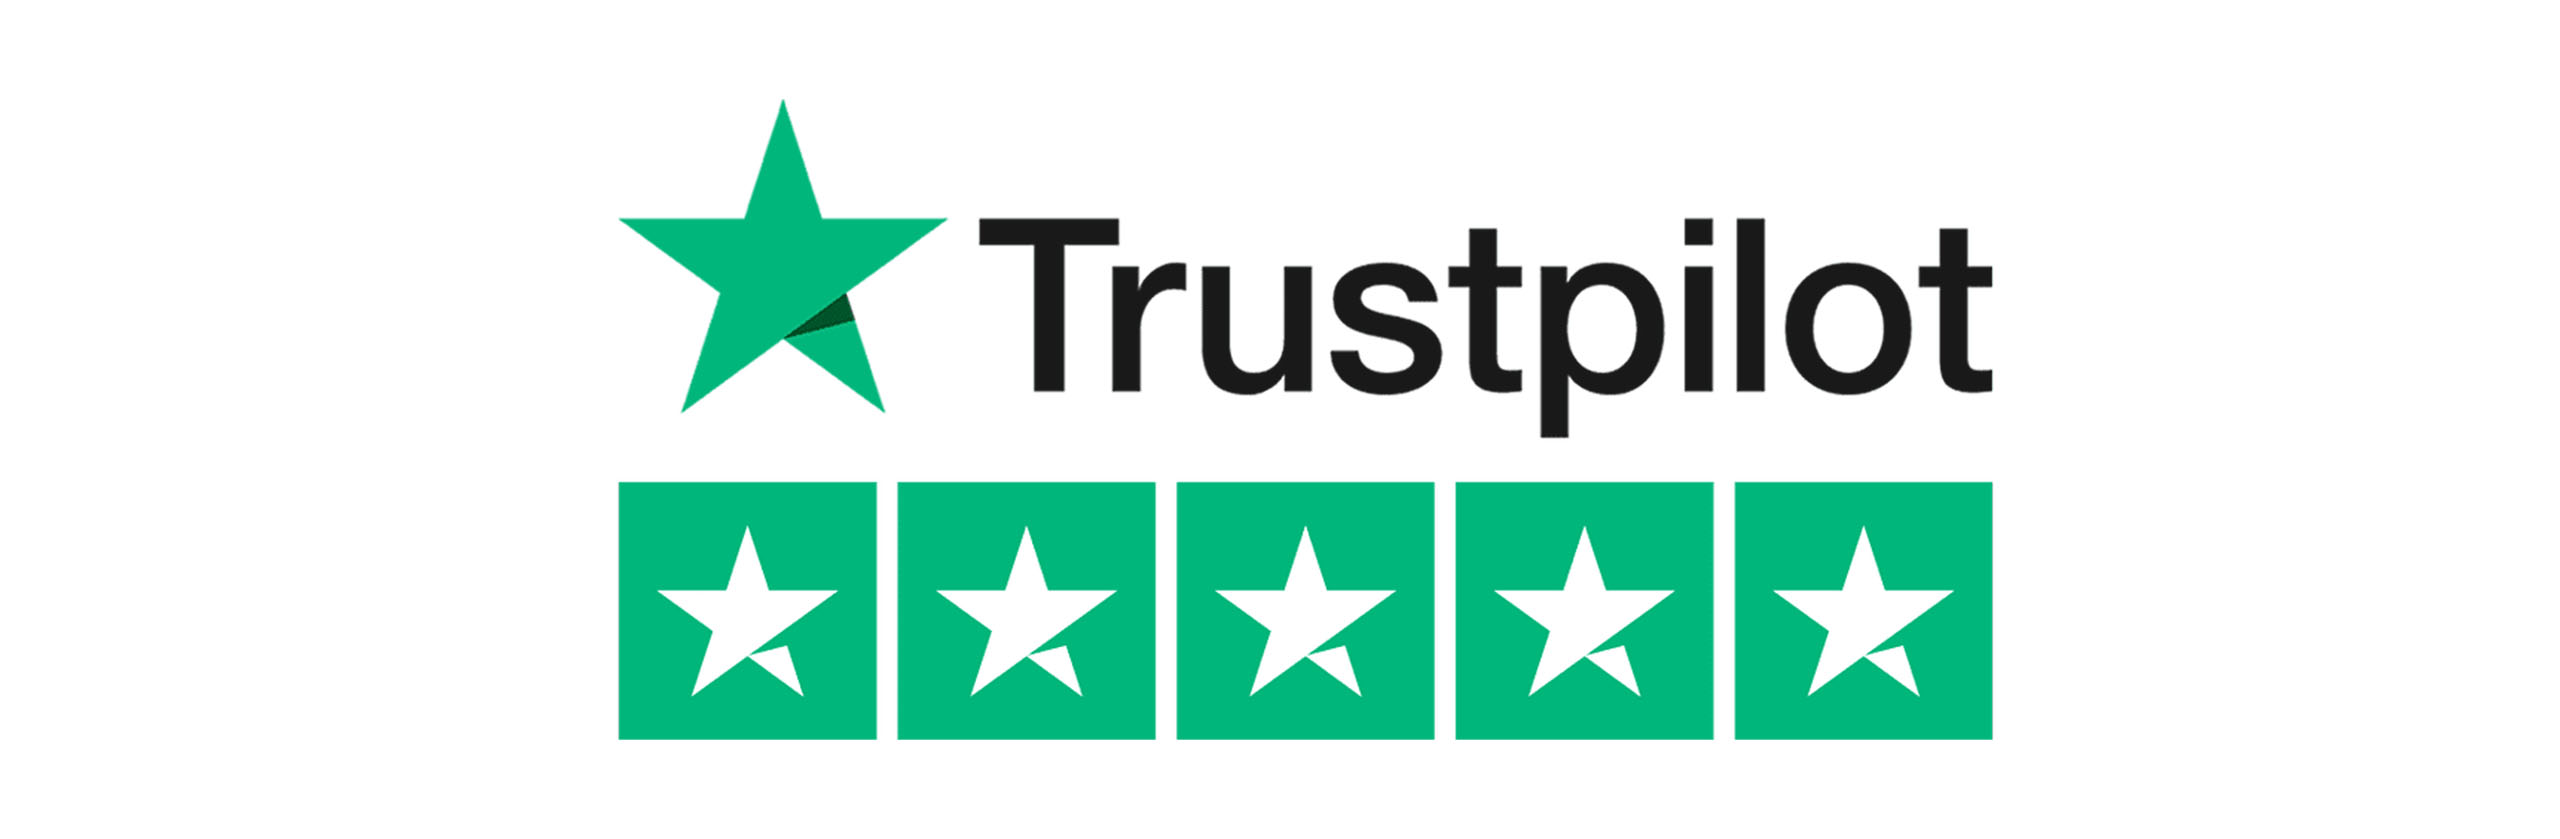 Trustpilot reviewes